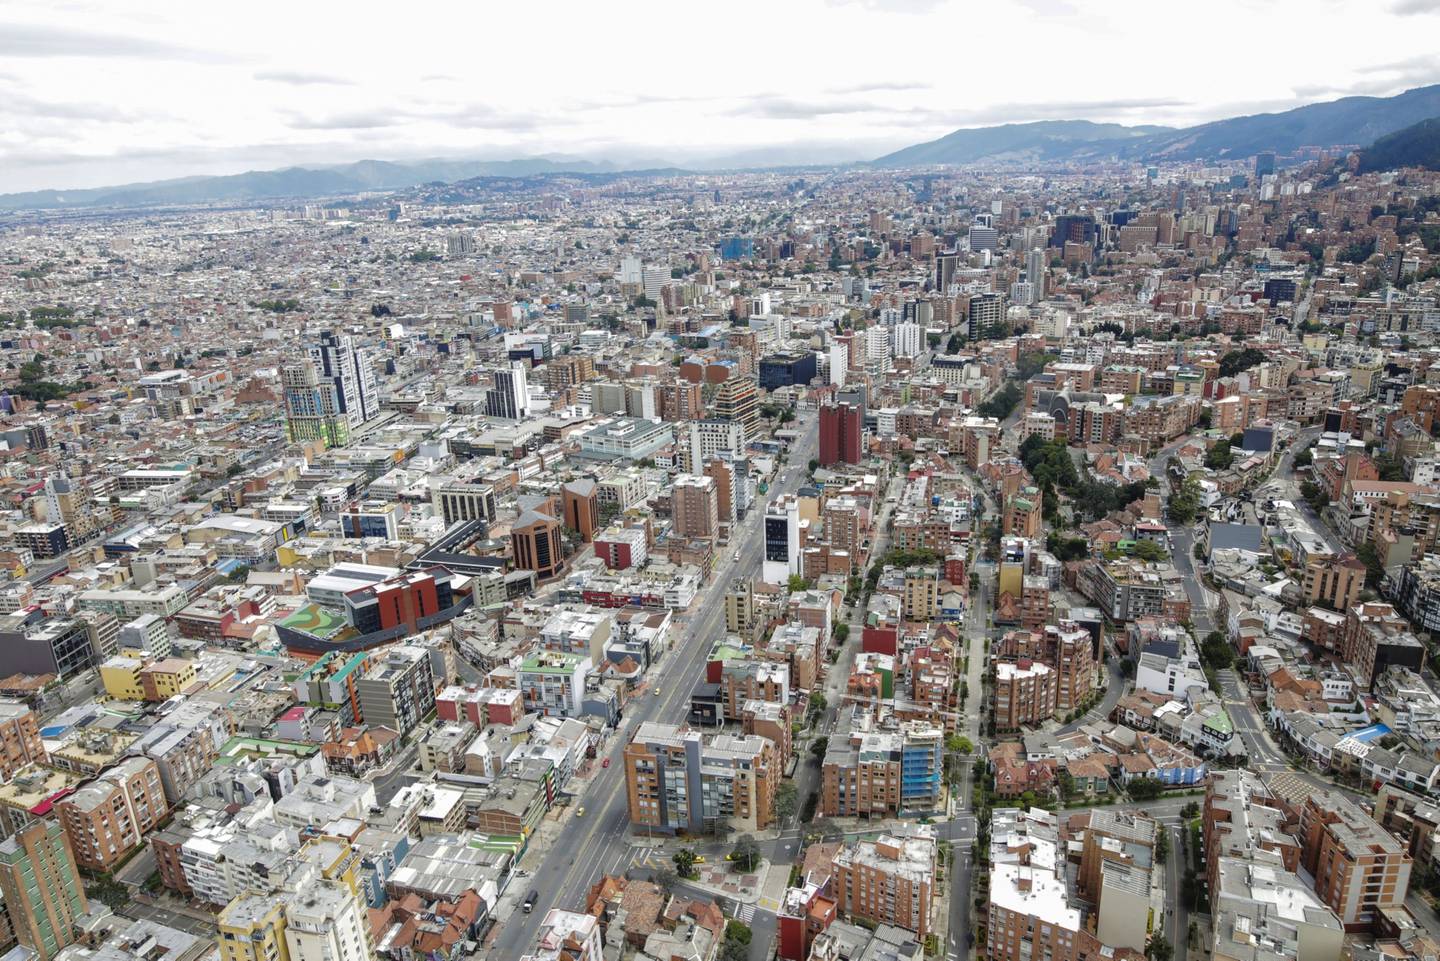 Fotografía aérea tomada sobre el centro de Bogotá, Colombia, el martes 7 de abril de 2020.